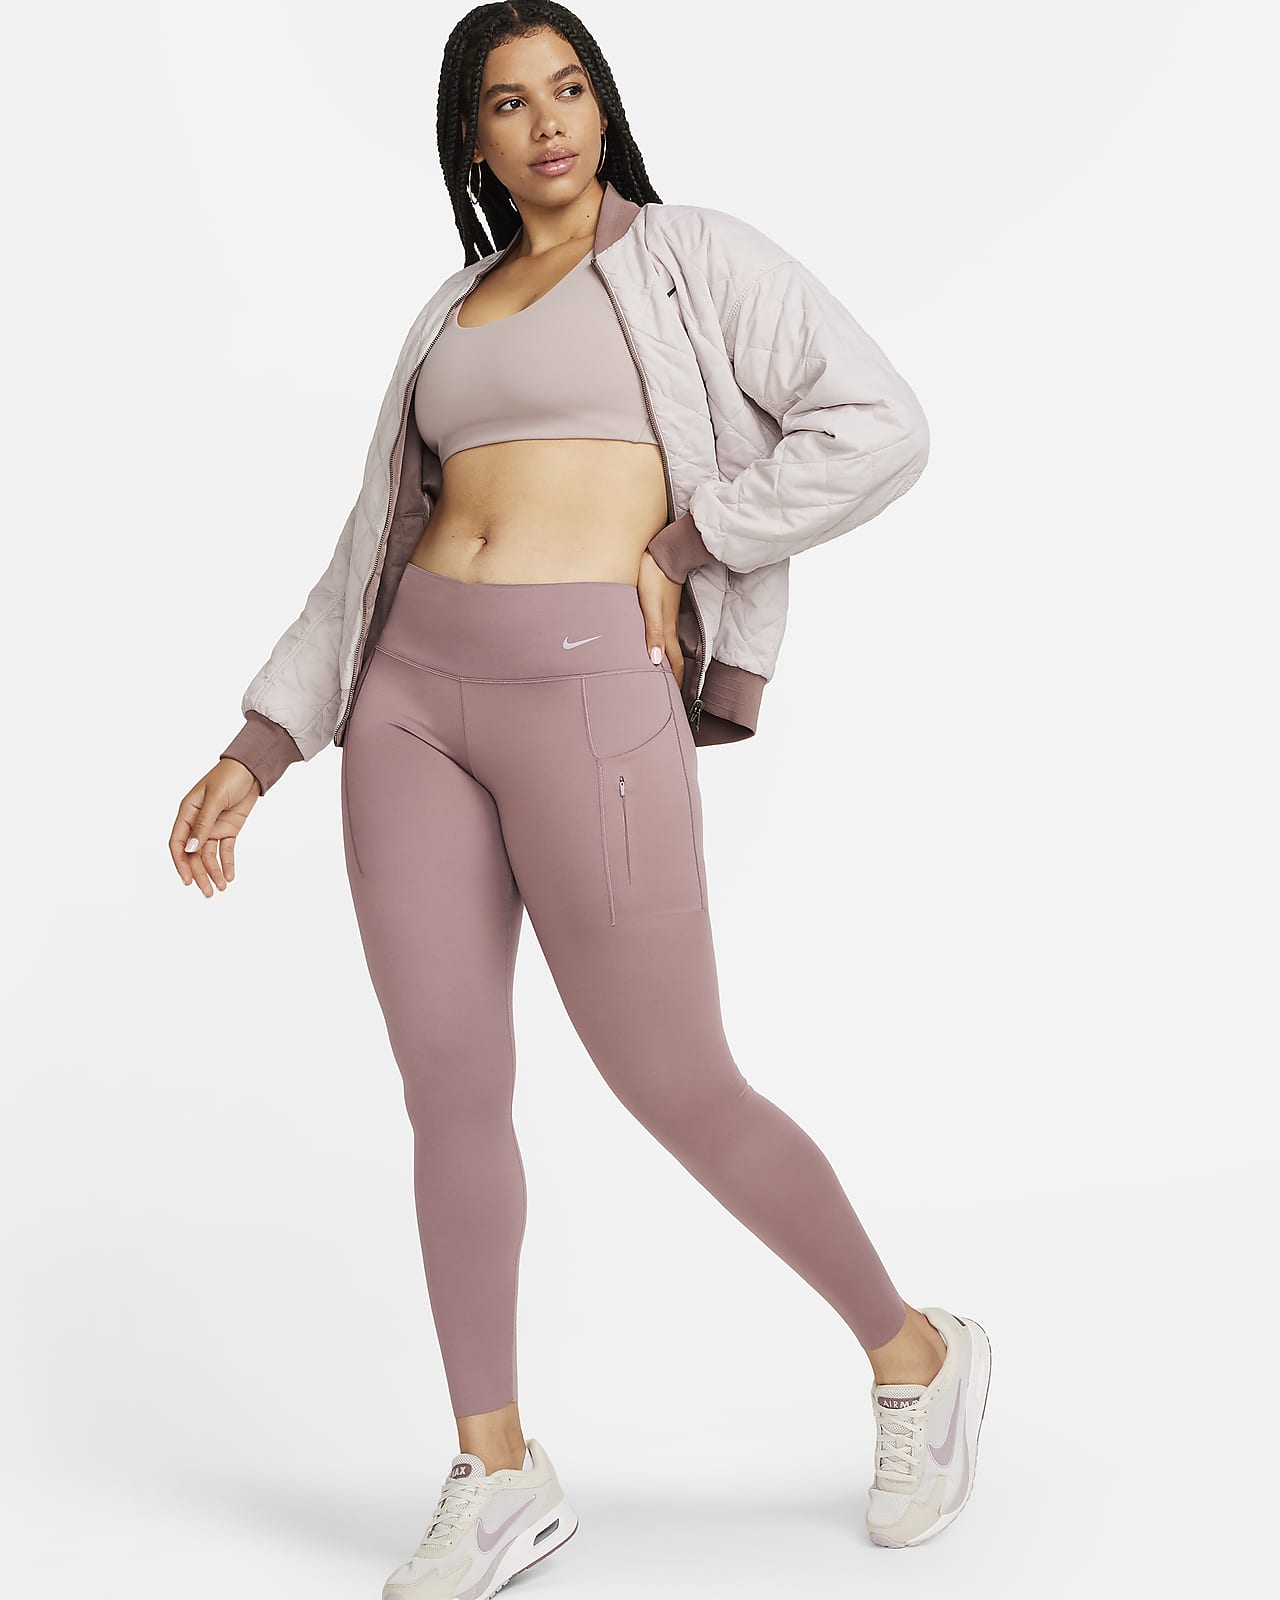 Γυναικείο κολάν μεσαίου ύψους σε κανονικό μήκος με σταθερή στήριξη και τσέπες Nike Go